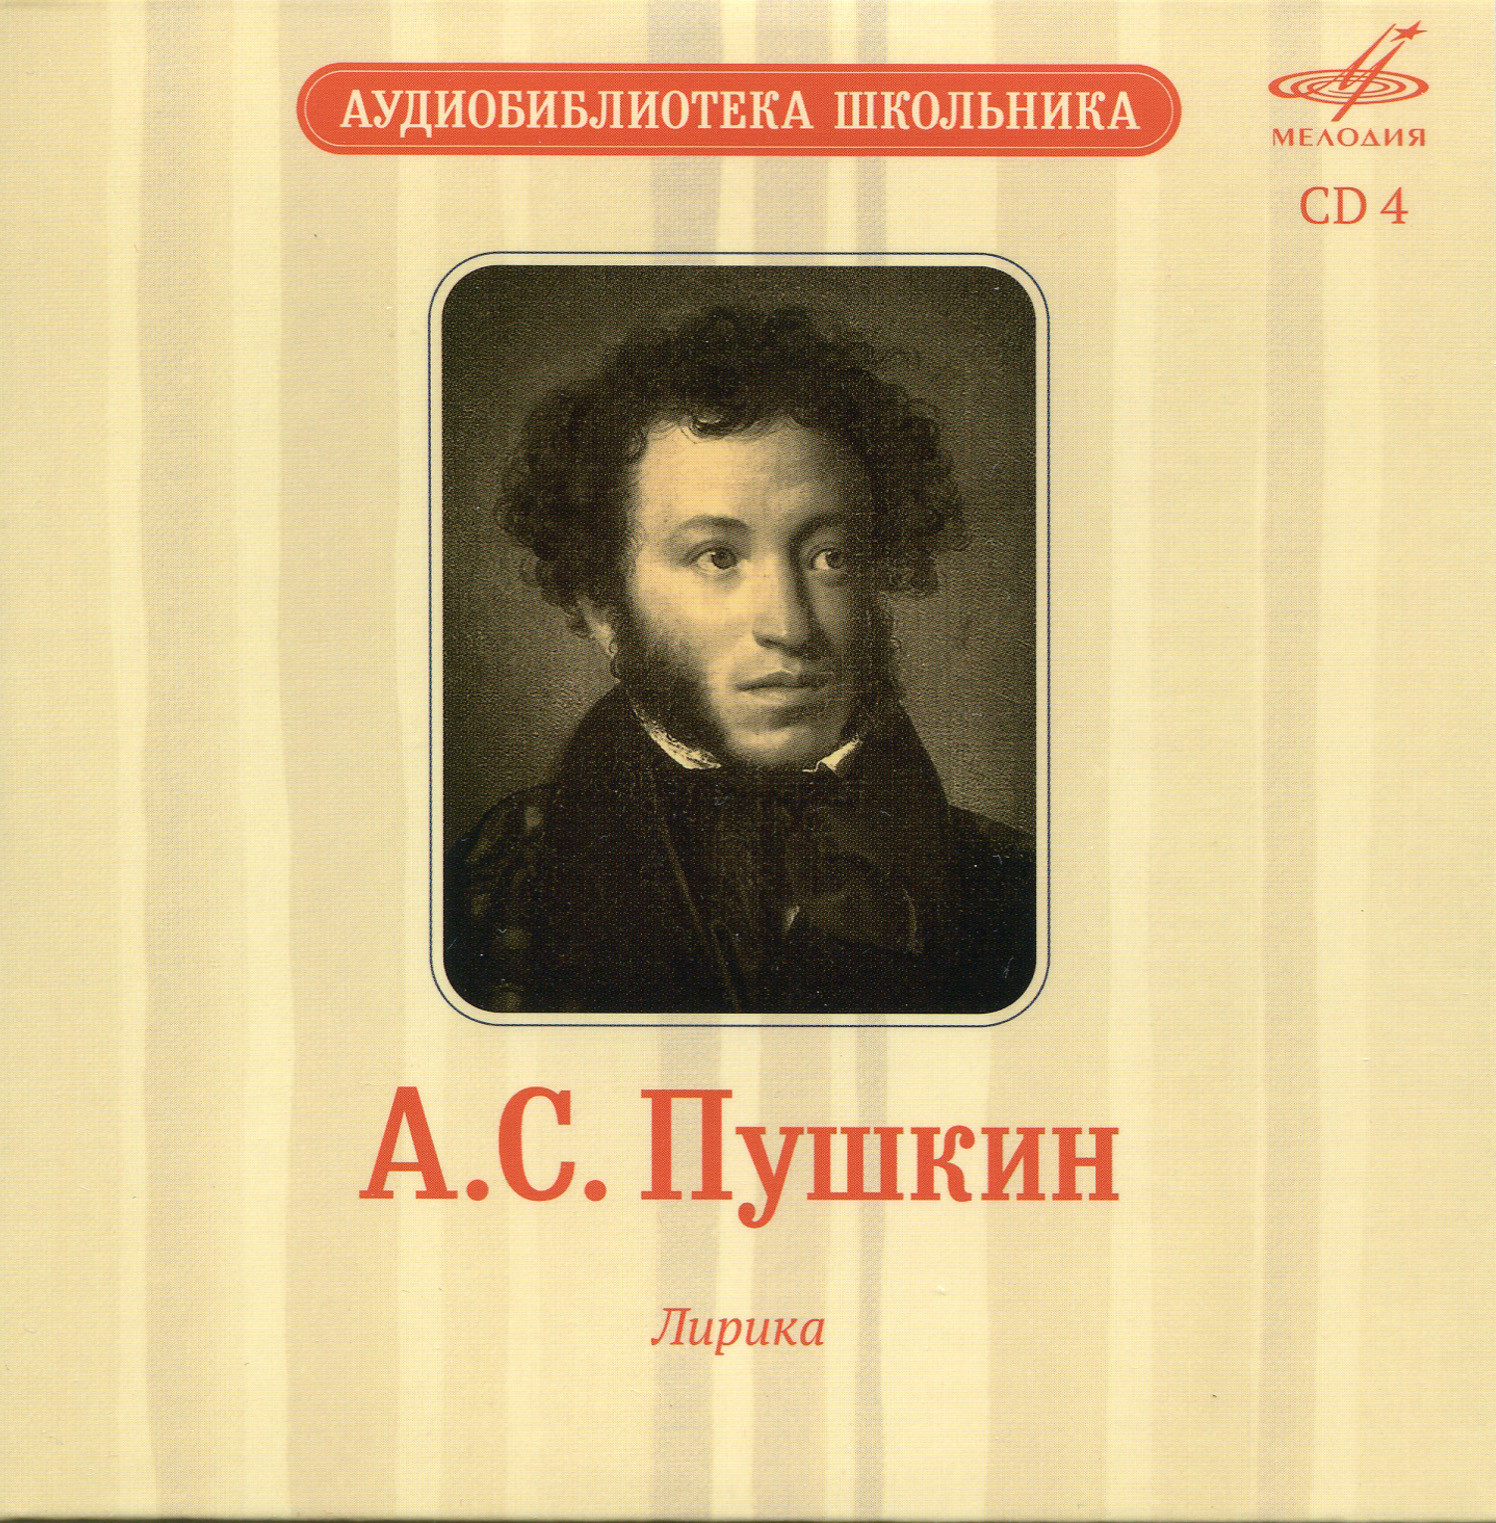 Аудиобиблиотека школьника. Том V. А. С. Пушкин - Сказки. Лирика (5 CD)